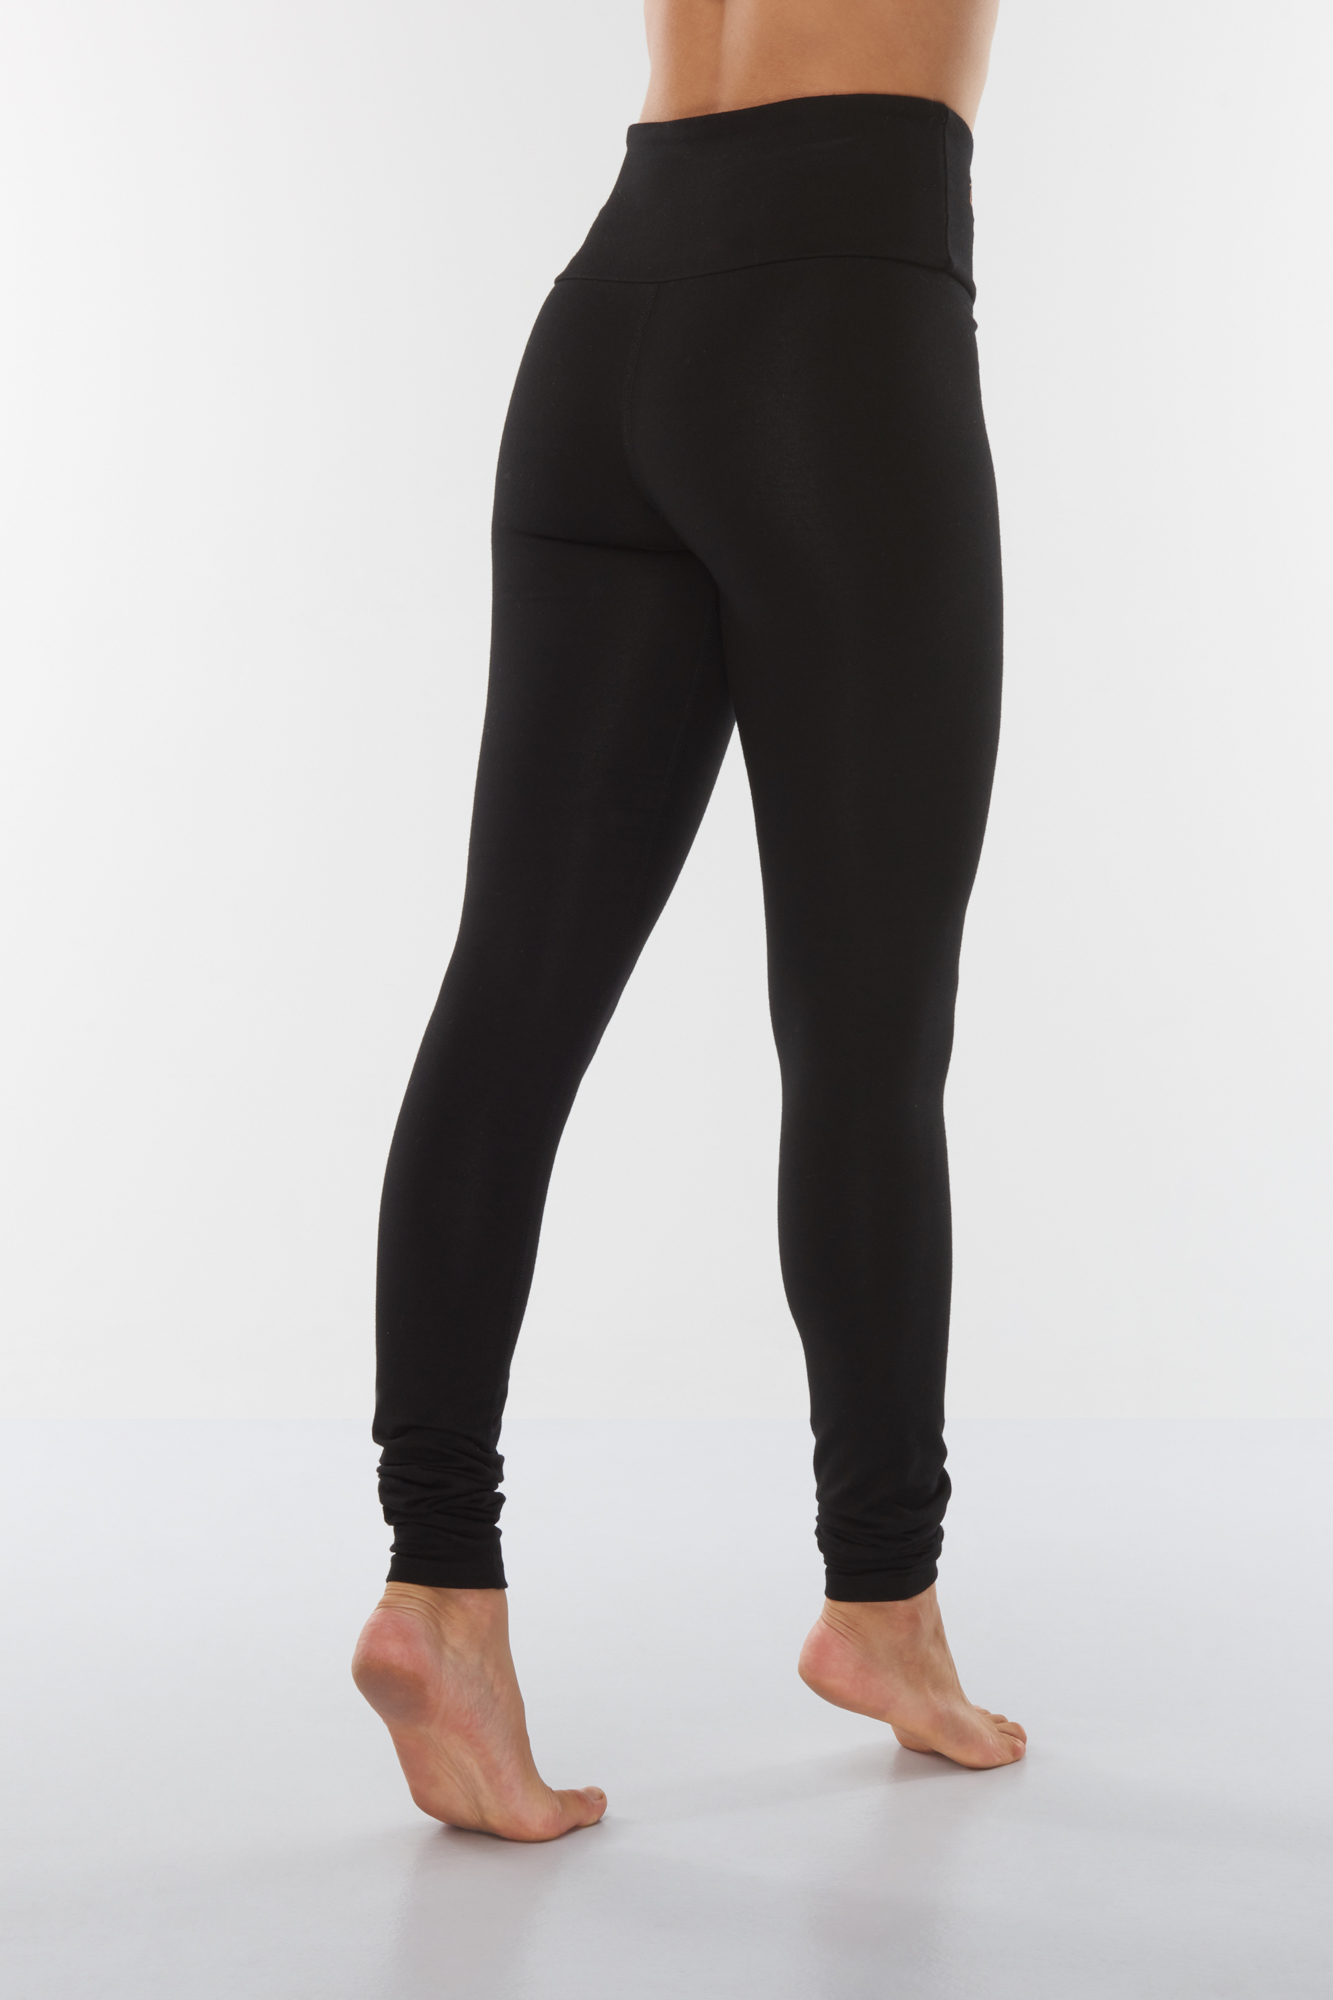 YOYOYOGA Yoga Leggings for Women Carbon Finishing High Waisted Yoga Pants  with Pockets Workout Running Legging, Black, Large : : Fashion